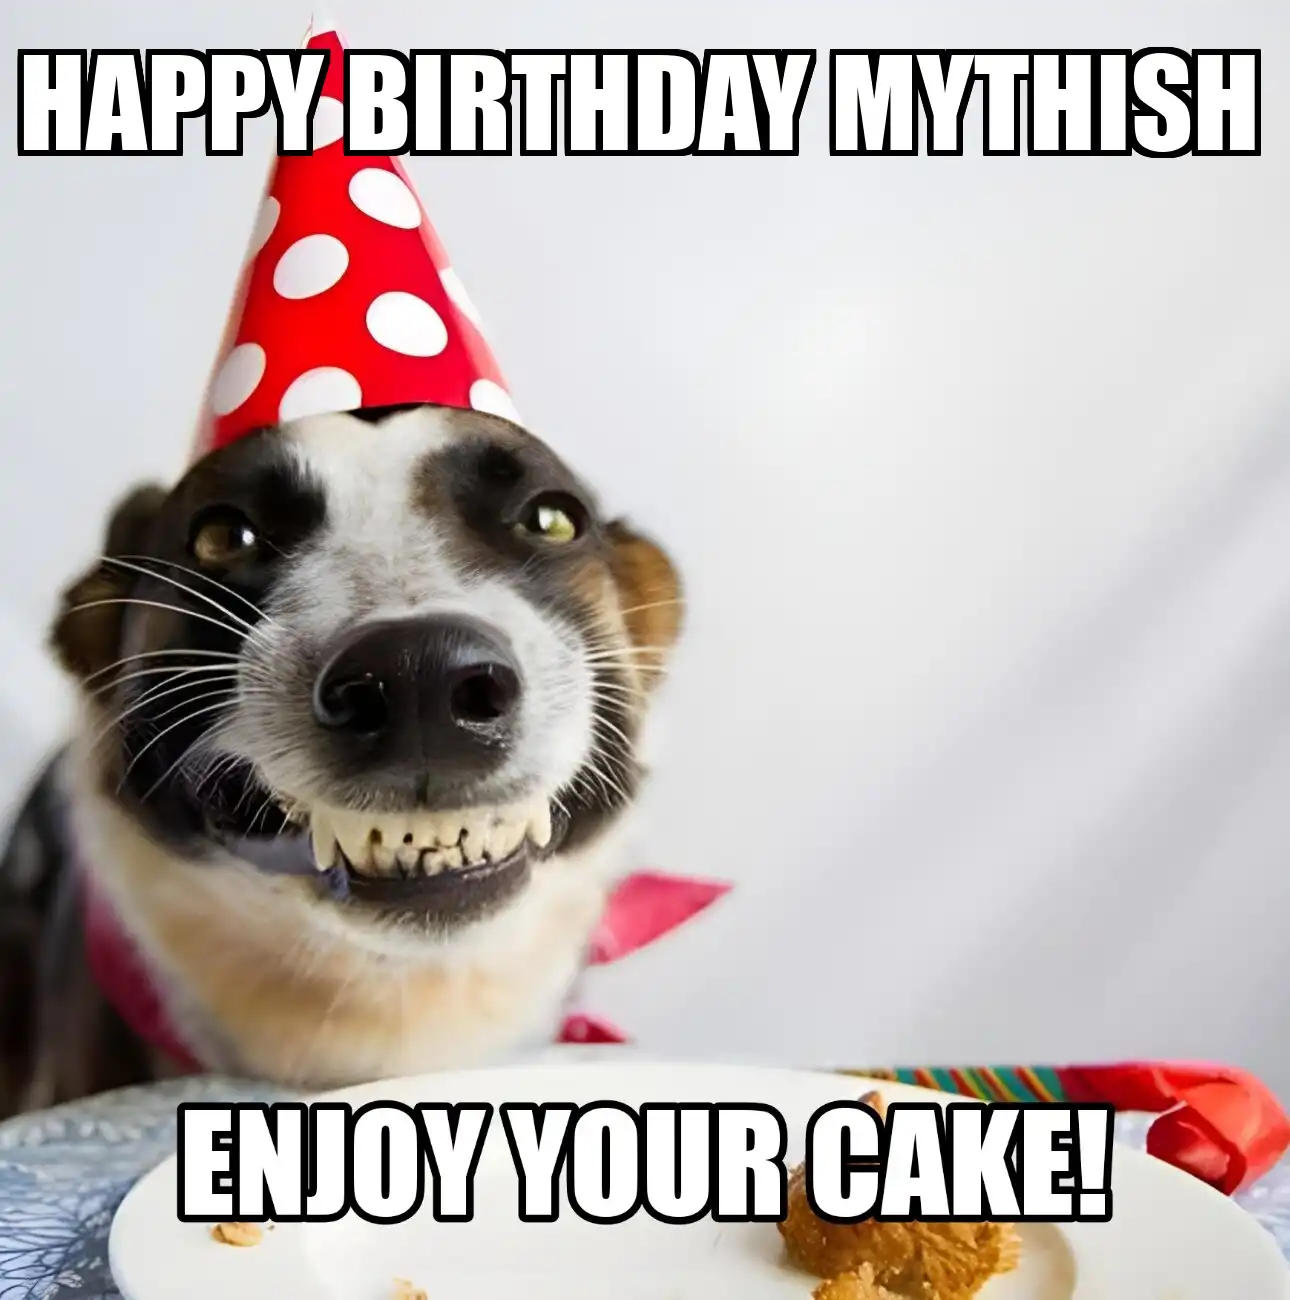 Happy Birthday Mythish Enjoy Your Cake Dog Meme